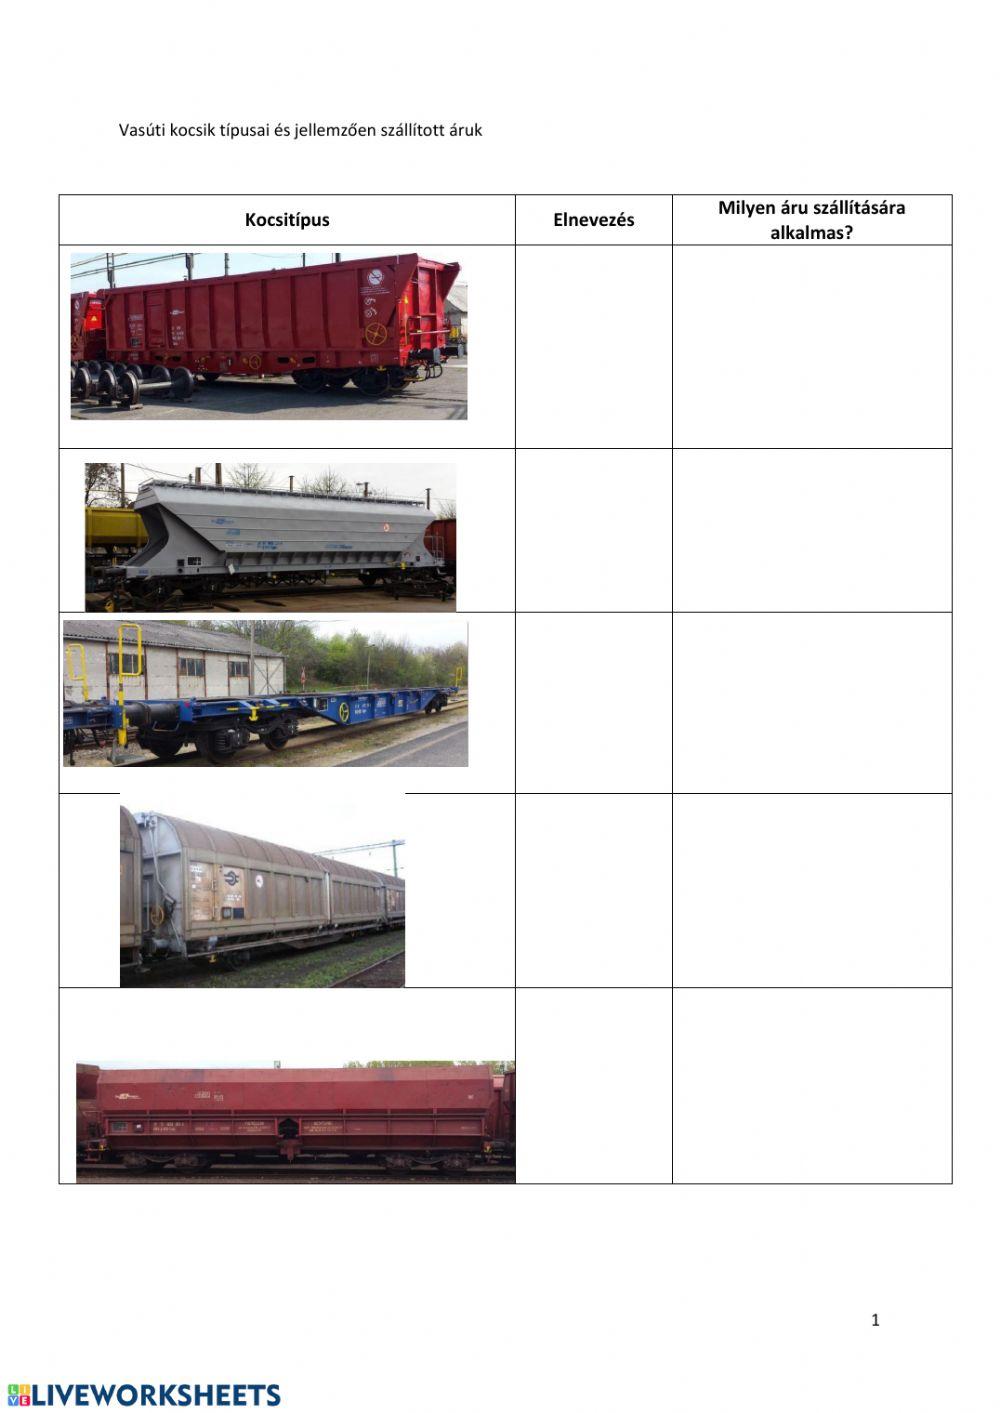 Vasúti kocsik típusai és jellemzően szállított áruk